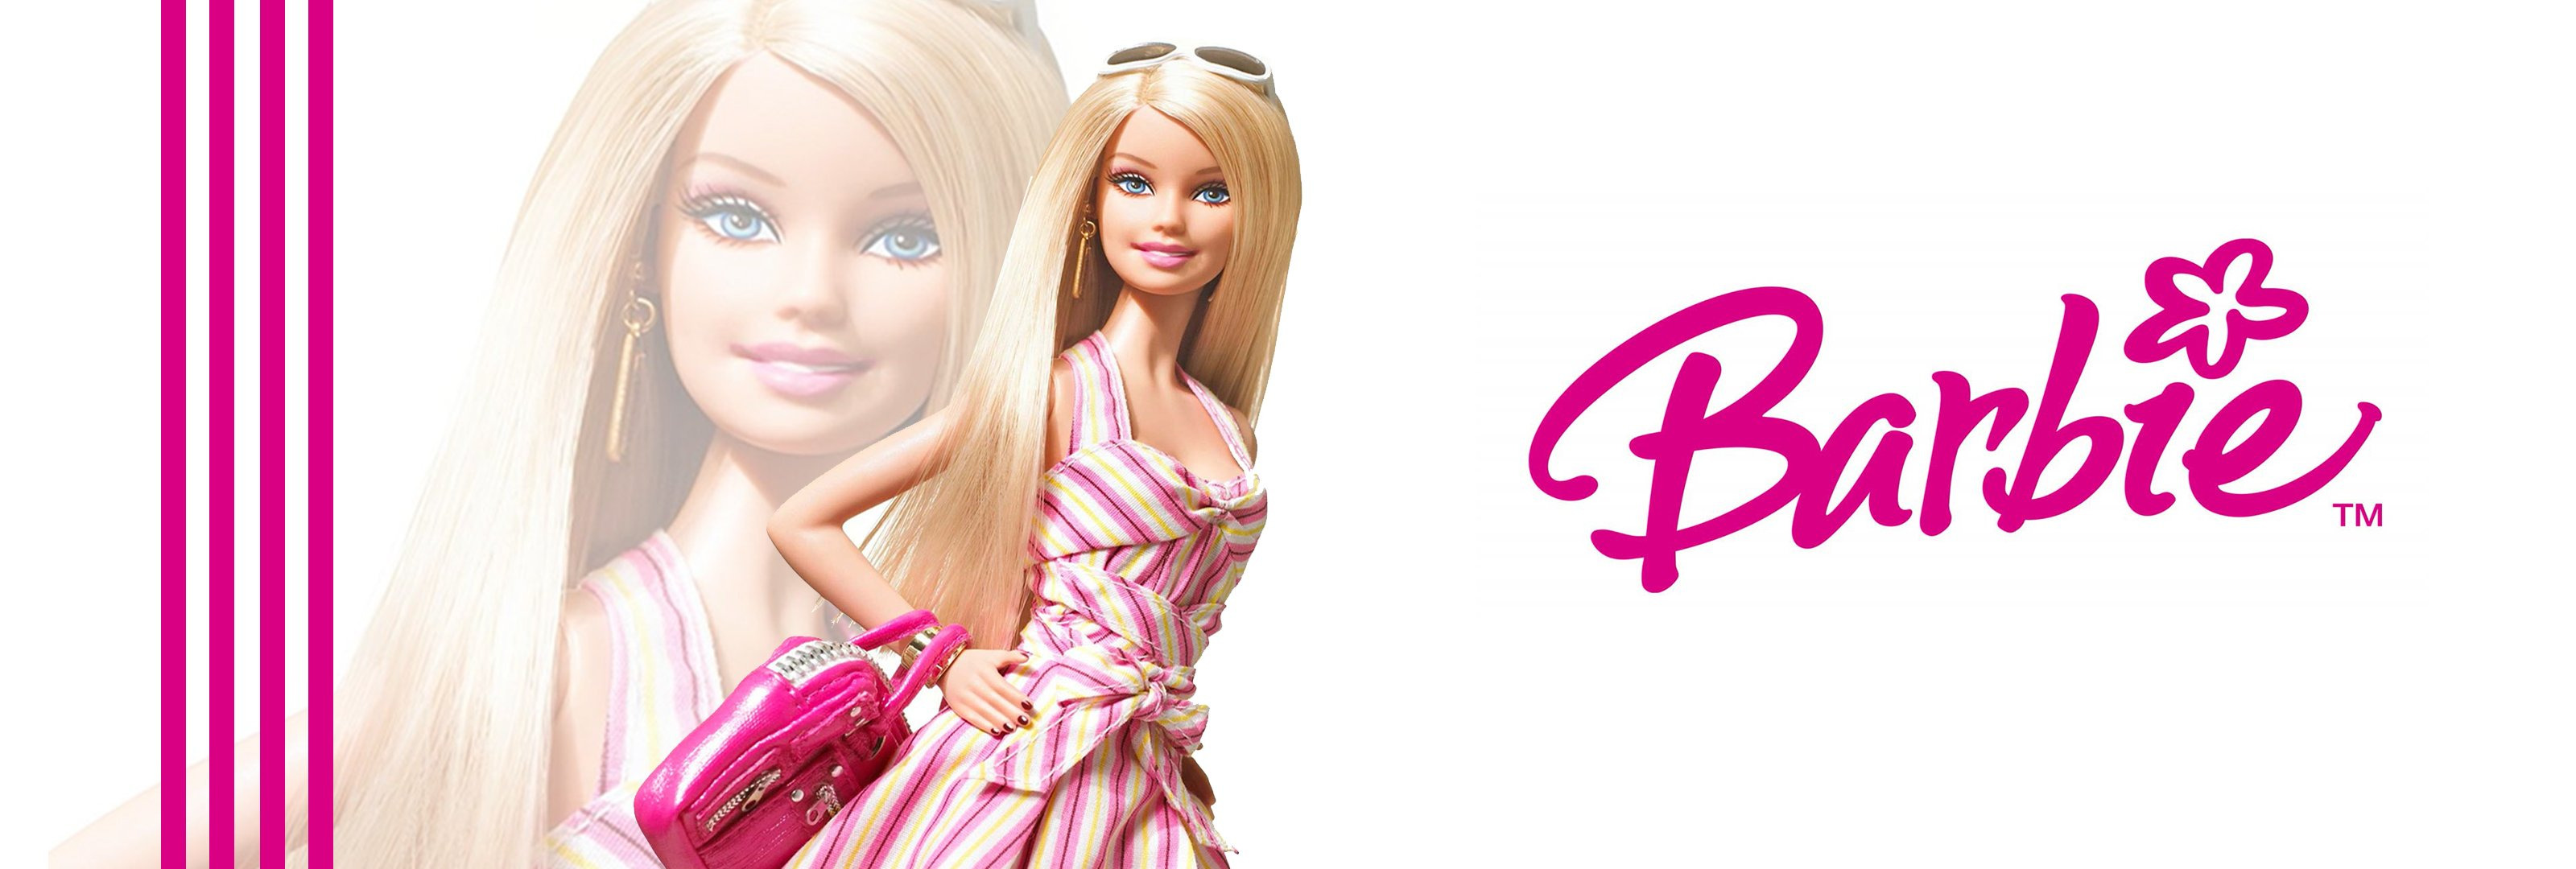 Sumergite en el Mundo Mágico de Barbie